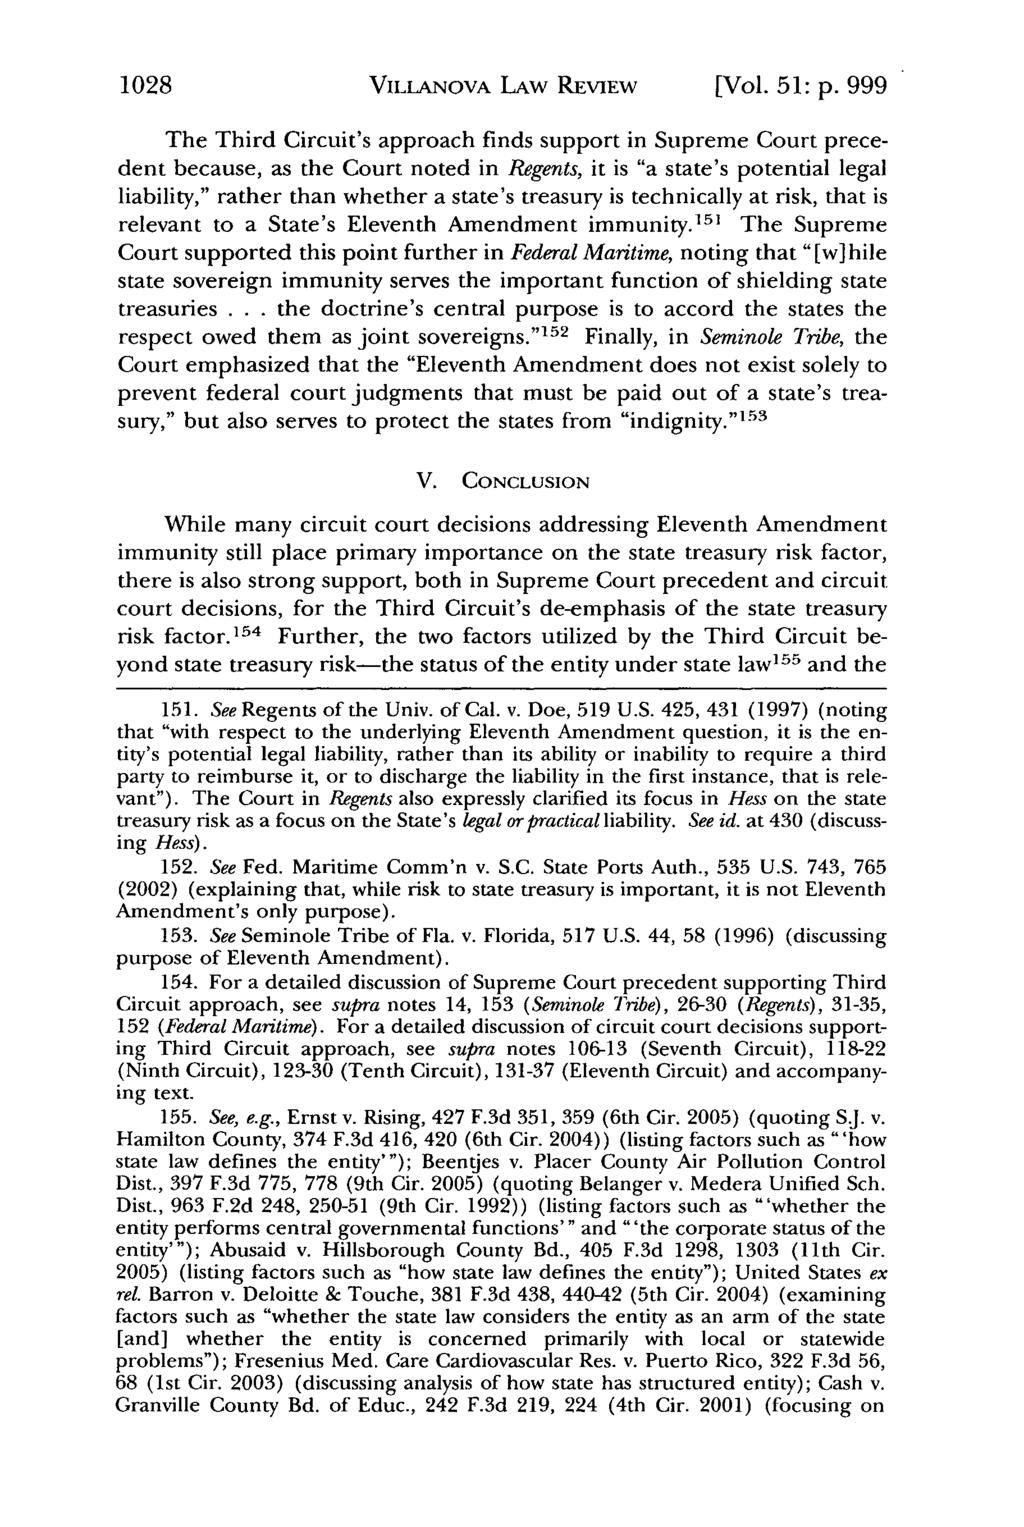 1028 Villanova Law Review, Vol. 51, Iss. 5 [2006], Art. 2 VILLANOVA LAW REVIEW [Vol. 51: p.